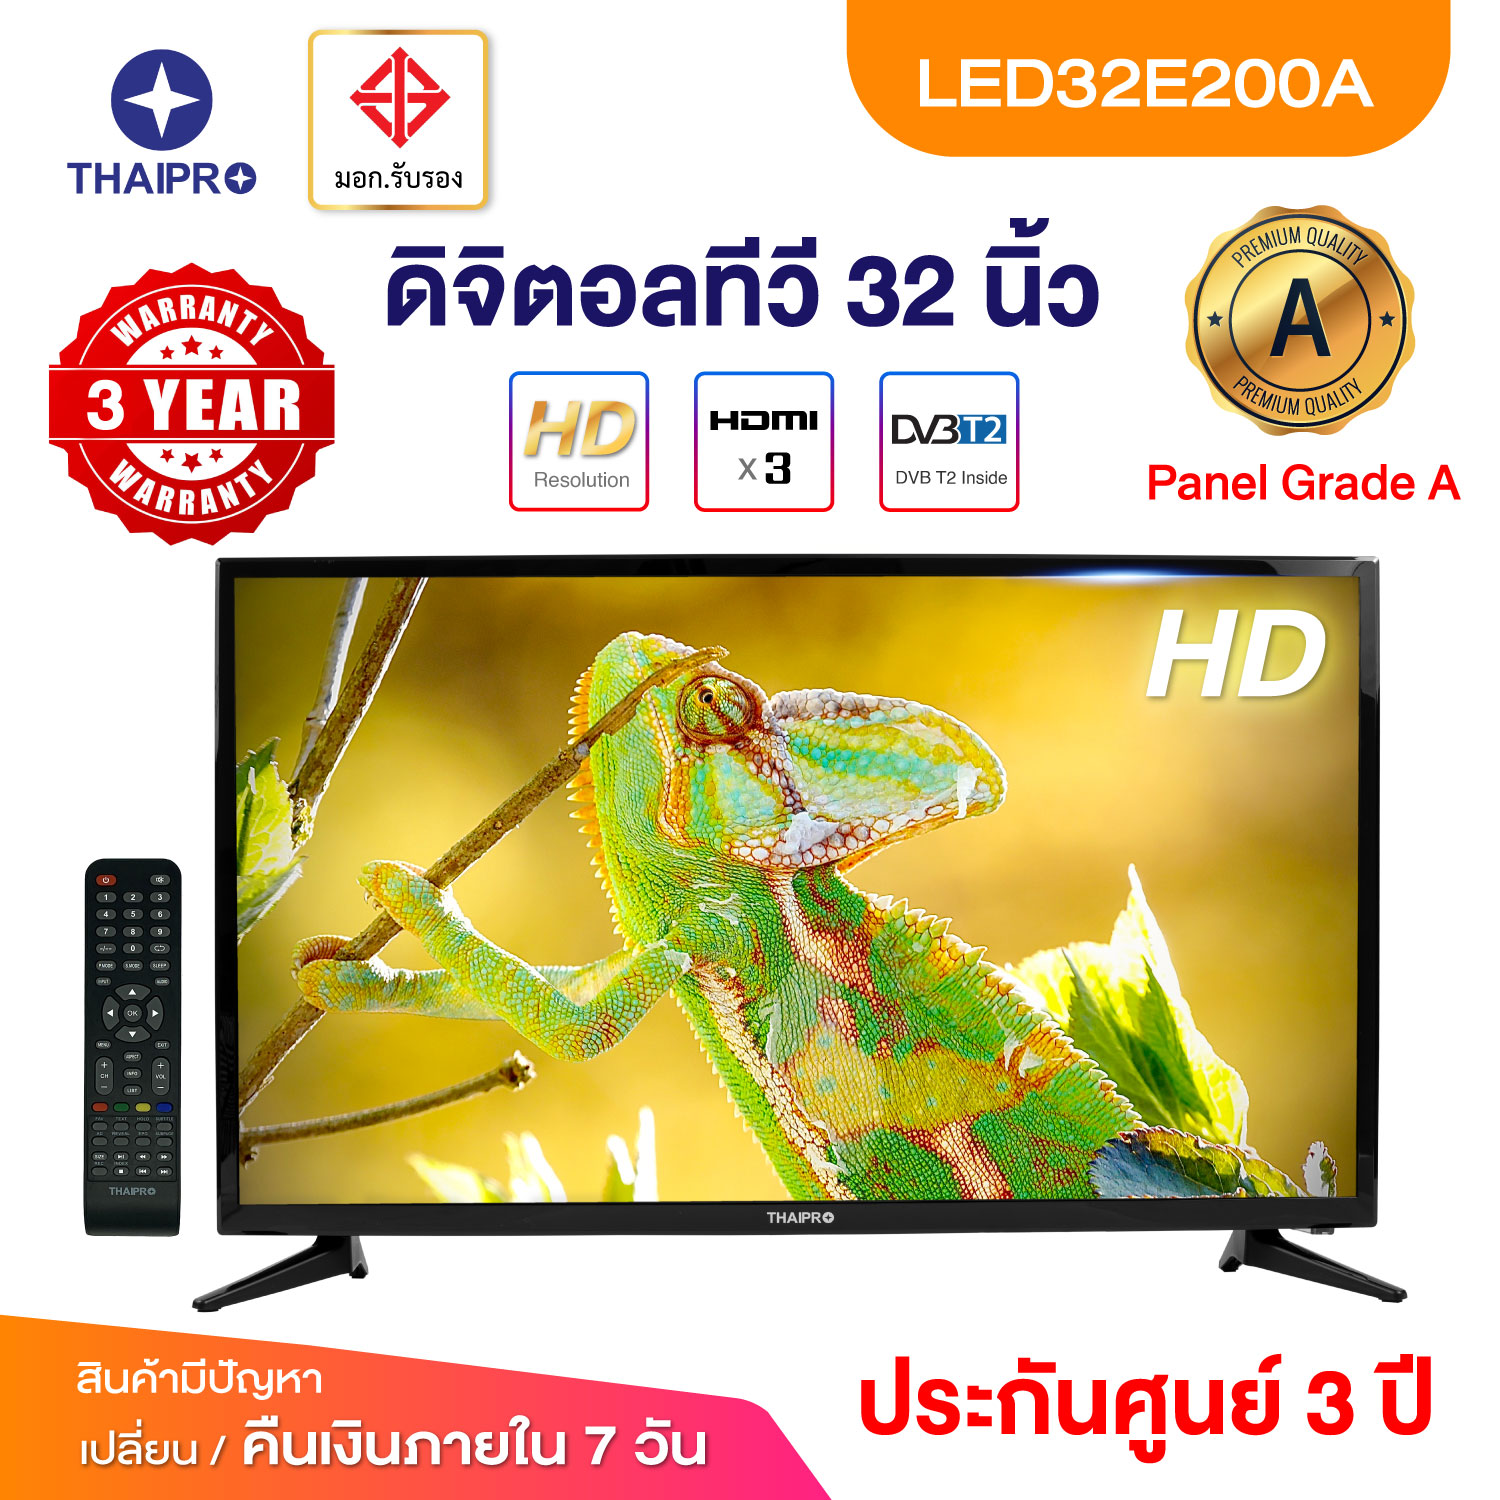 ดิจิตอลทีวี Thai pro Digital LED TV 32” HD 720p รุ่น 32E200A จอมอนิเตอร์ รับประกัน 3 ปี LED Gread A ขนาด 32นิ้ว ช่องHDMI 3ช่อง monitor เปลี่ยนสินค้าได้ภายใน 7วัน